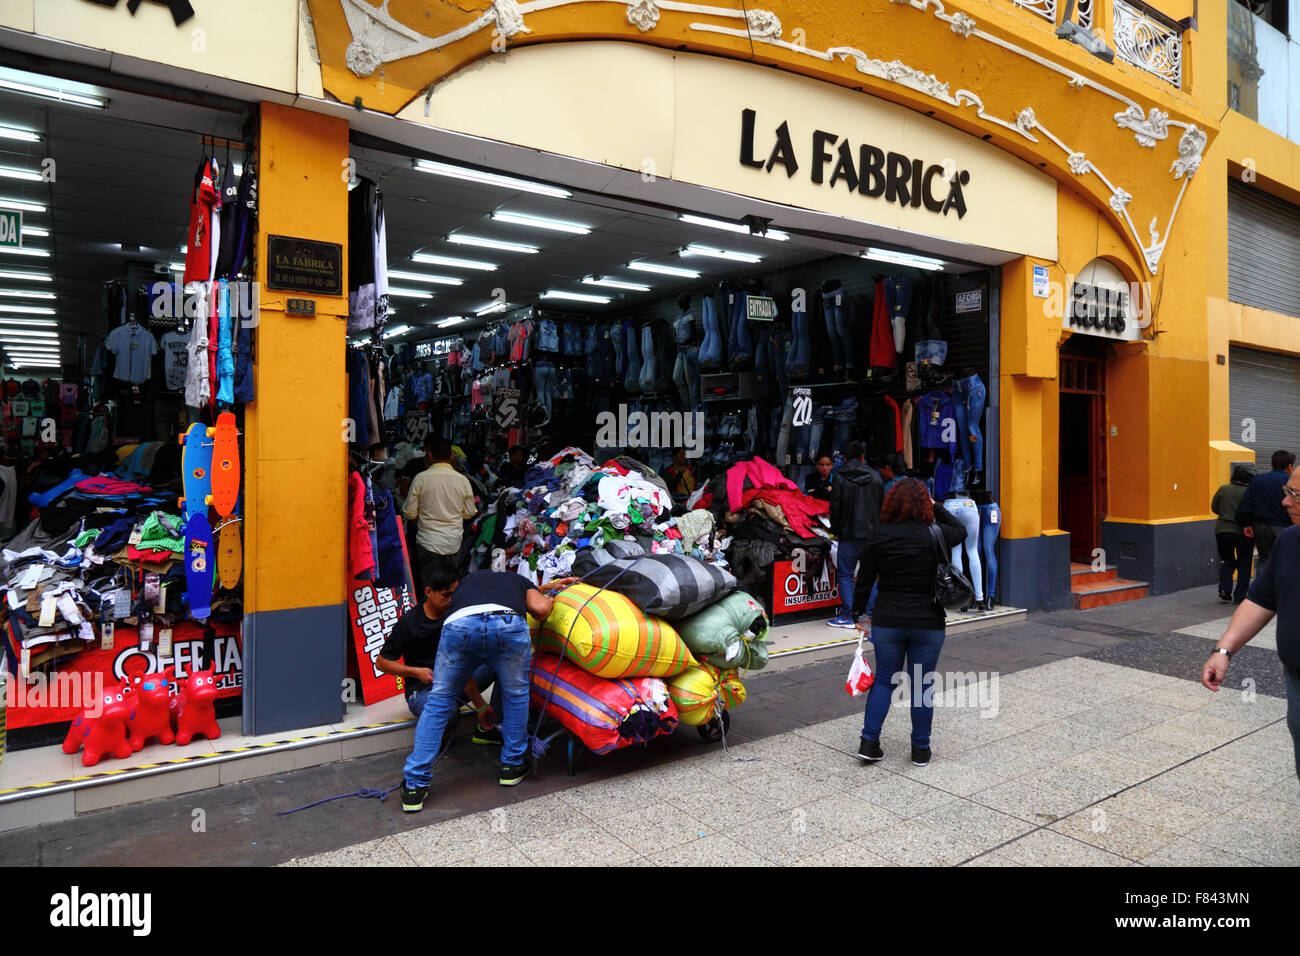 Magasin qui vend des vêtements importés bon marché dans Jiron Union européenne, centre de Lima, Pérou Banque D'Images